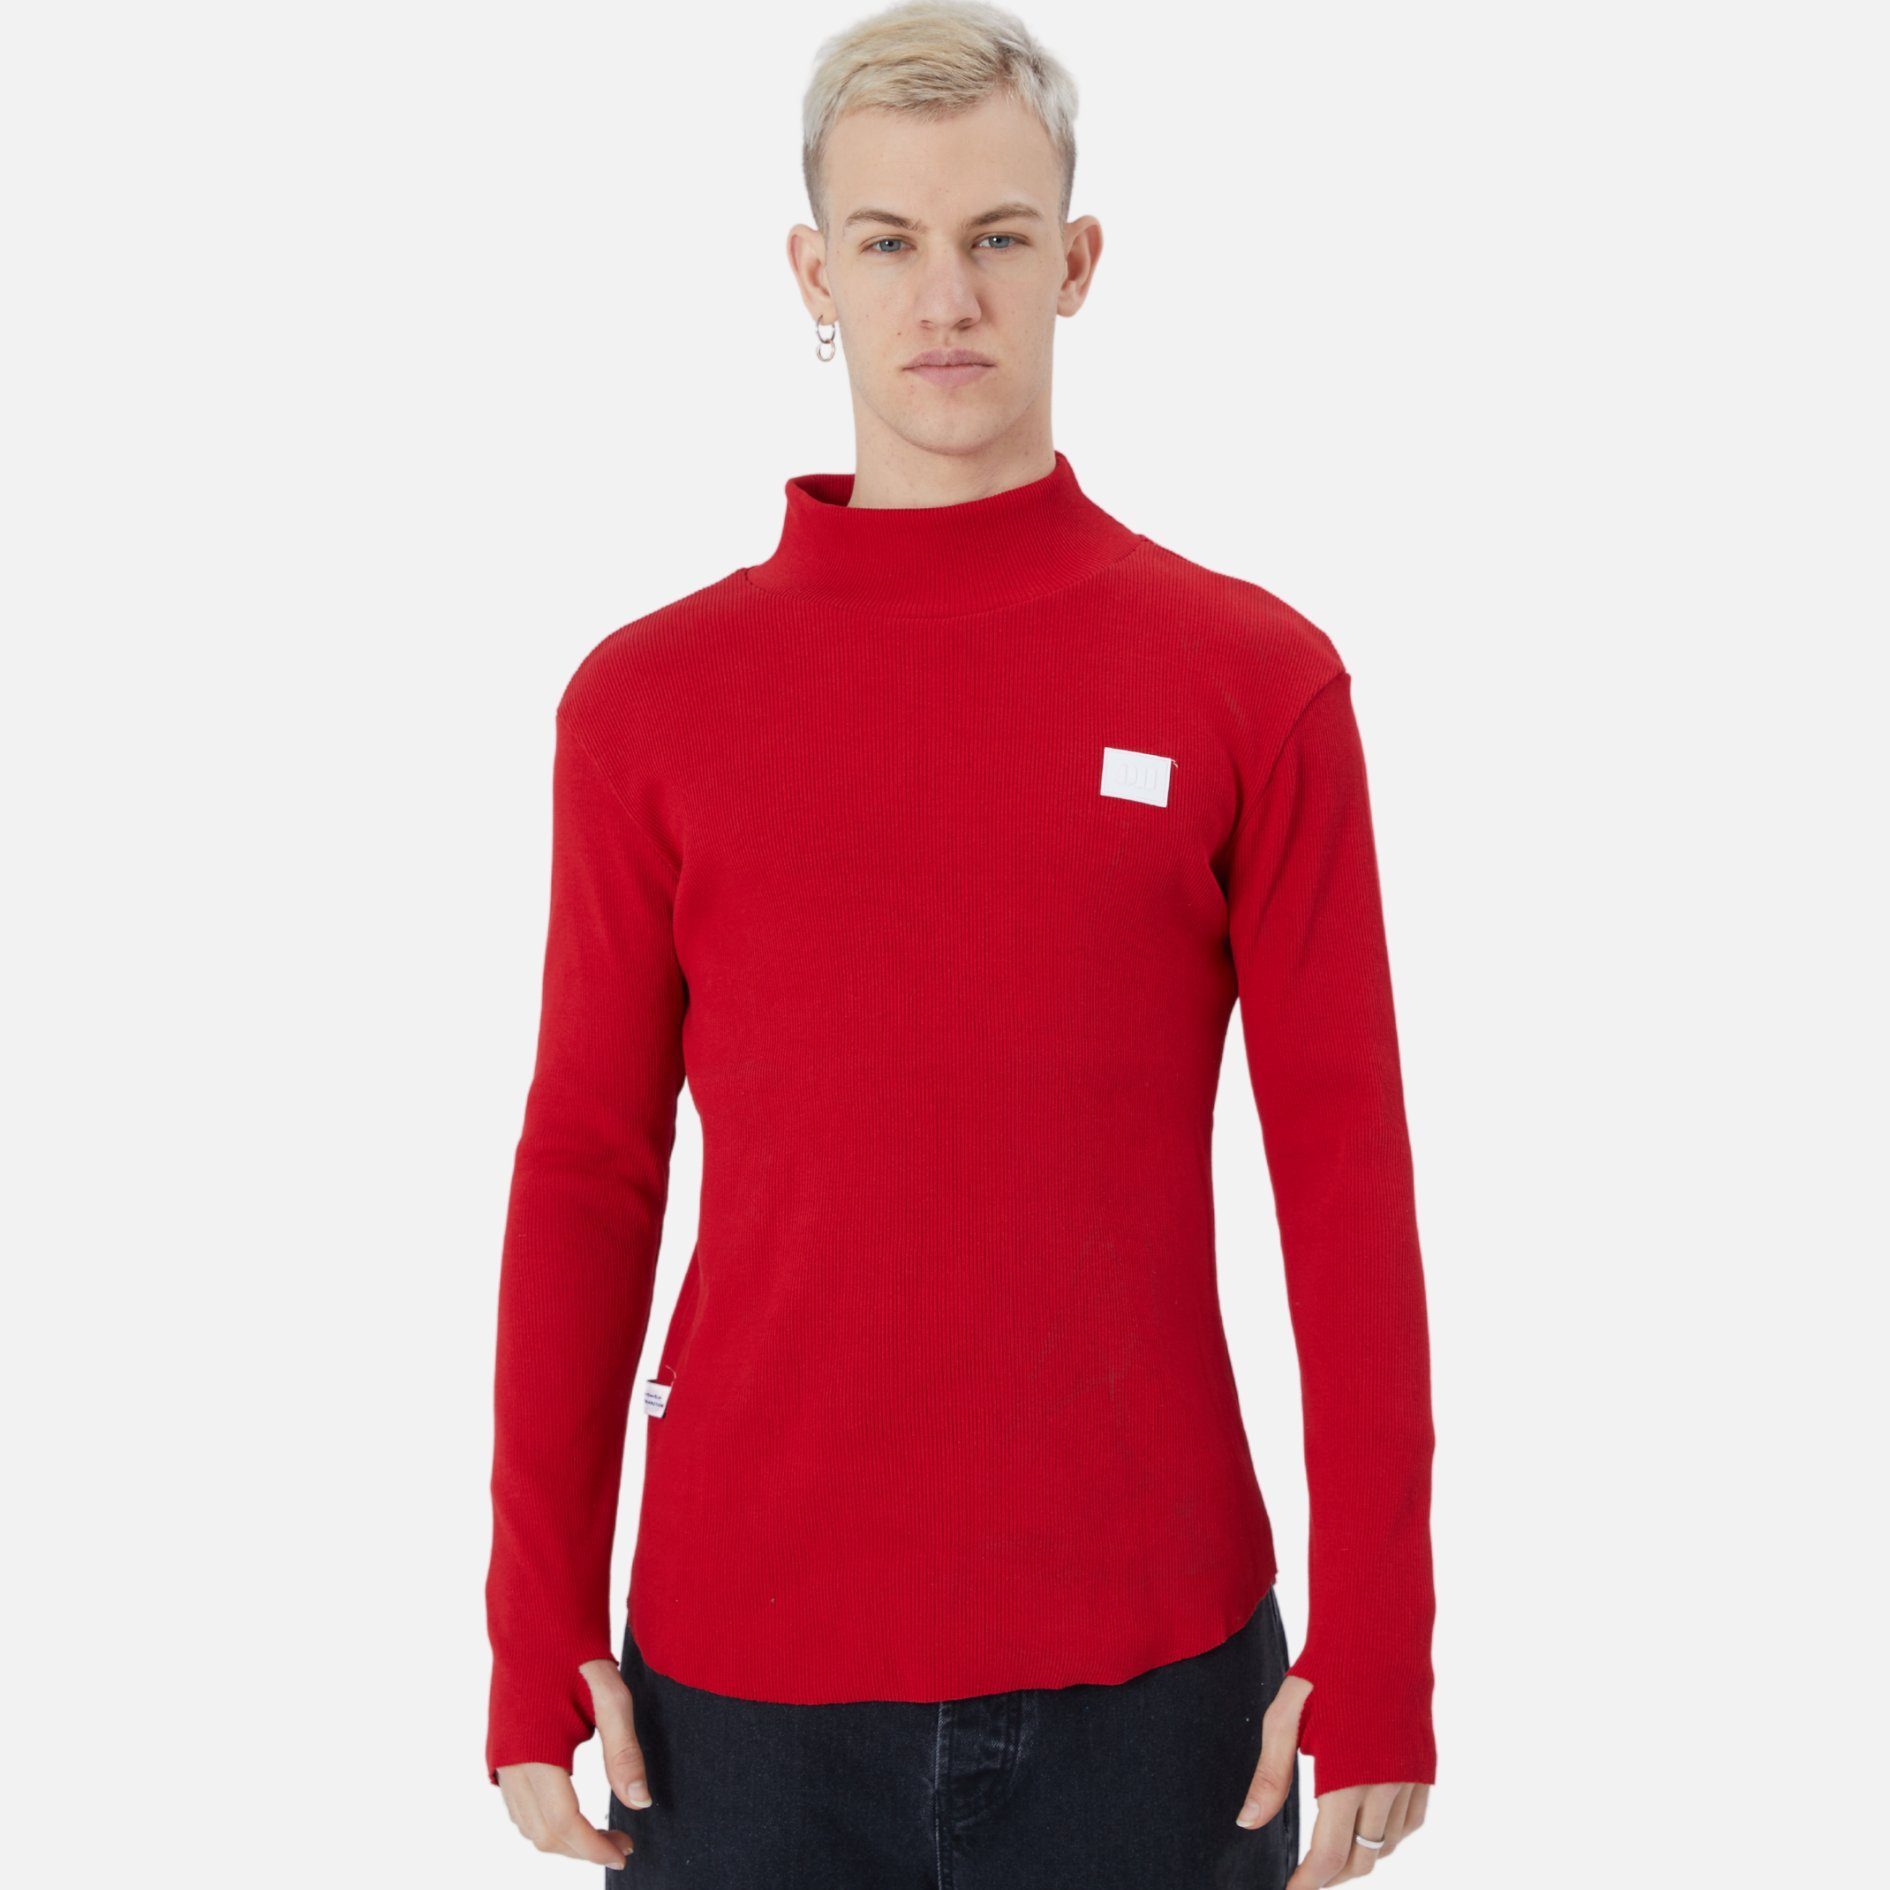 COFI Casuals Sweatshirt Herren Rundhals Sweatshirt Regular Fit Pullover Rot | Sweatshirts